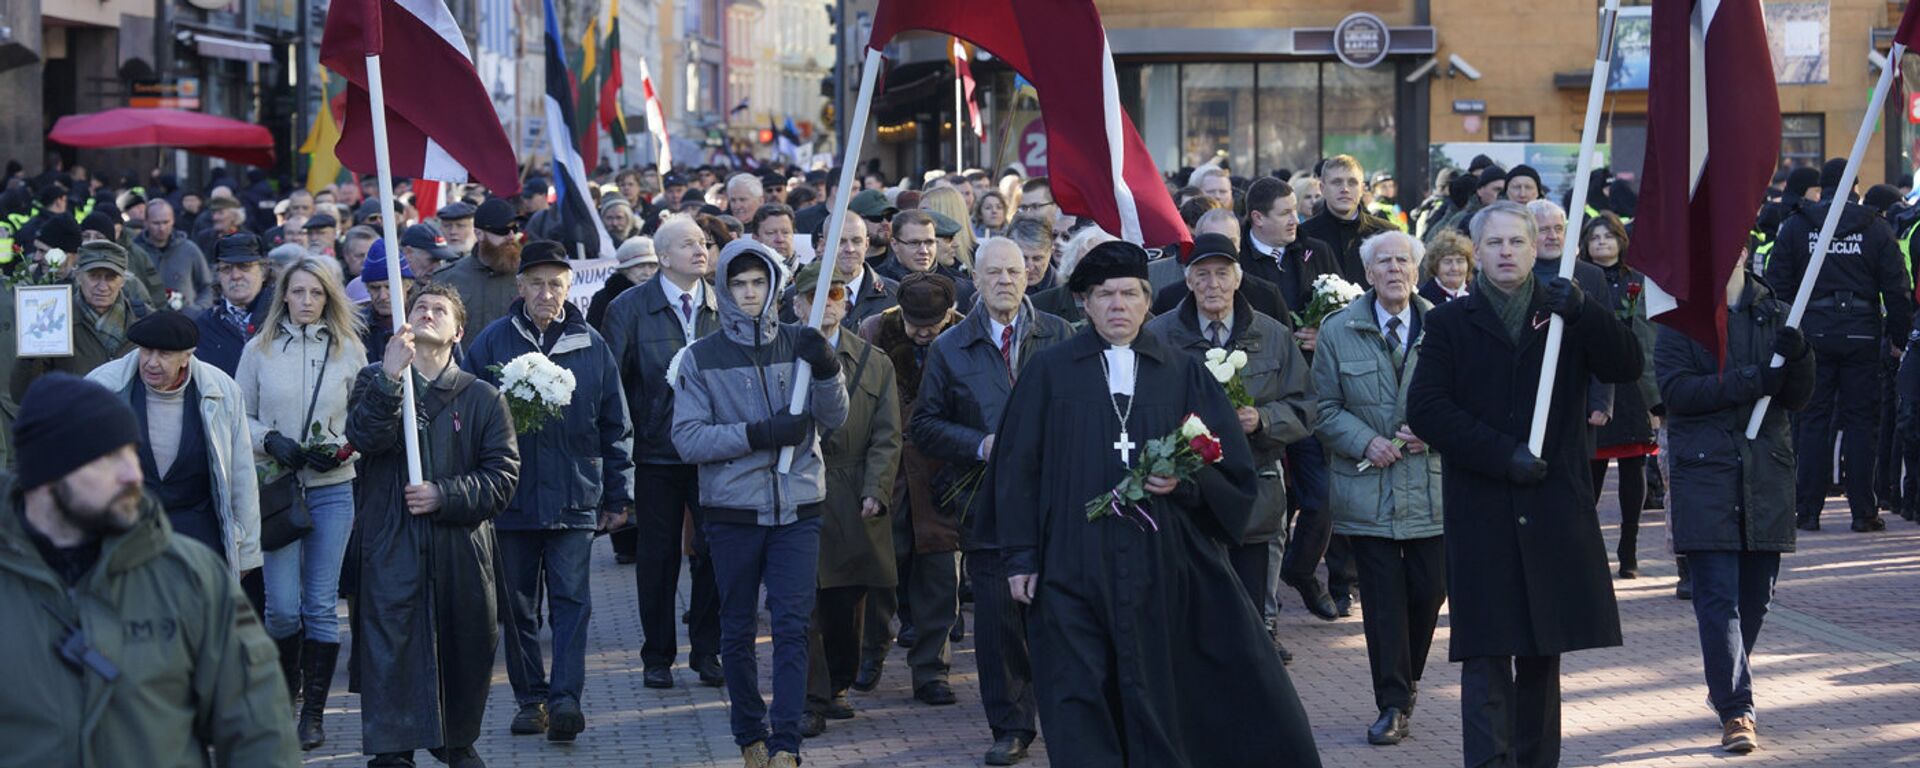 Участники шествия легионеров в Риге - Sputnik Латвия, 1920, 13.03.2019